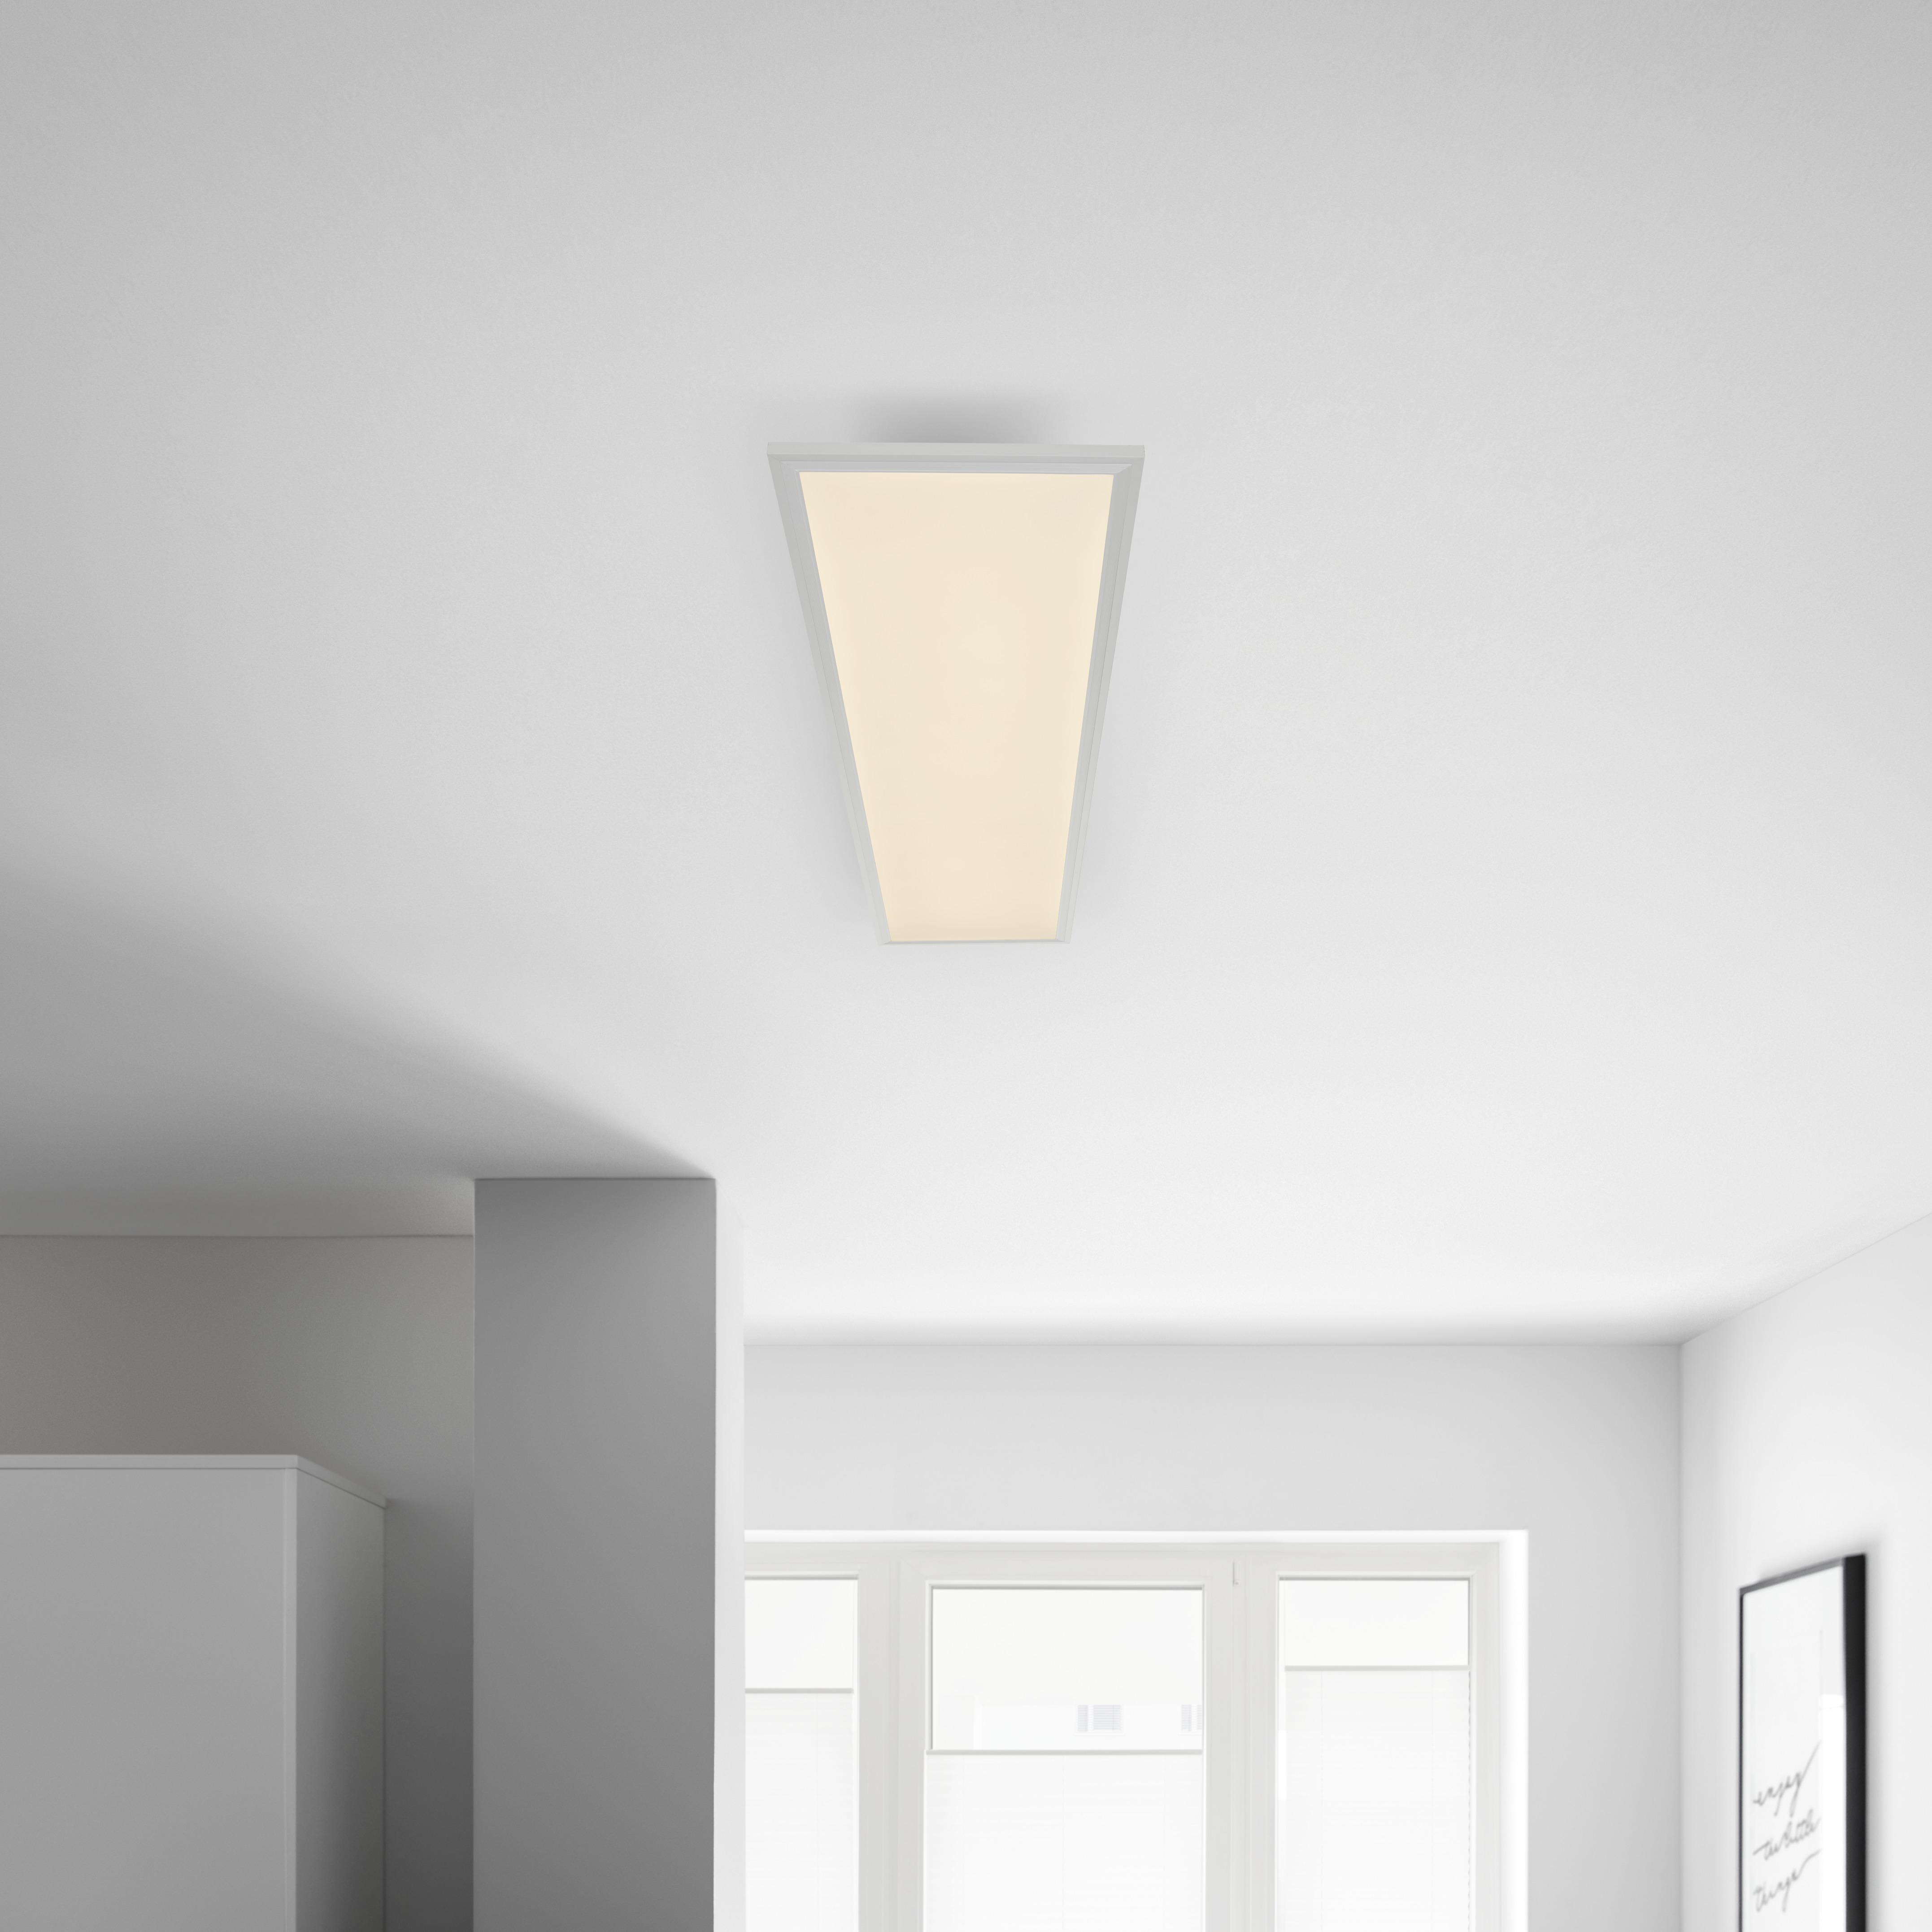 LED-Deckenleuchte Cornelius max. 40 Watt - Weiß, MODERN, Kunststoff (120/30/7,5cm) - Premium Living